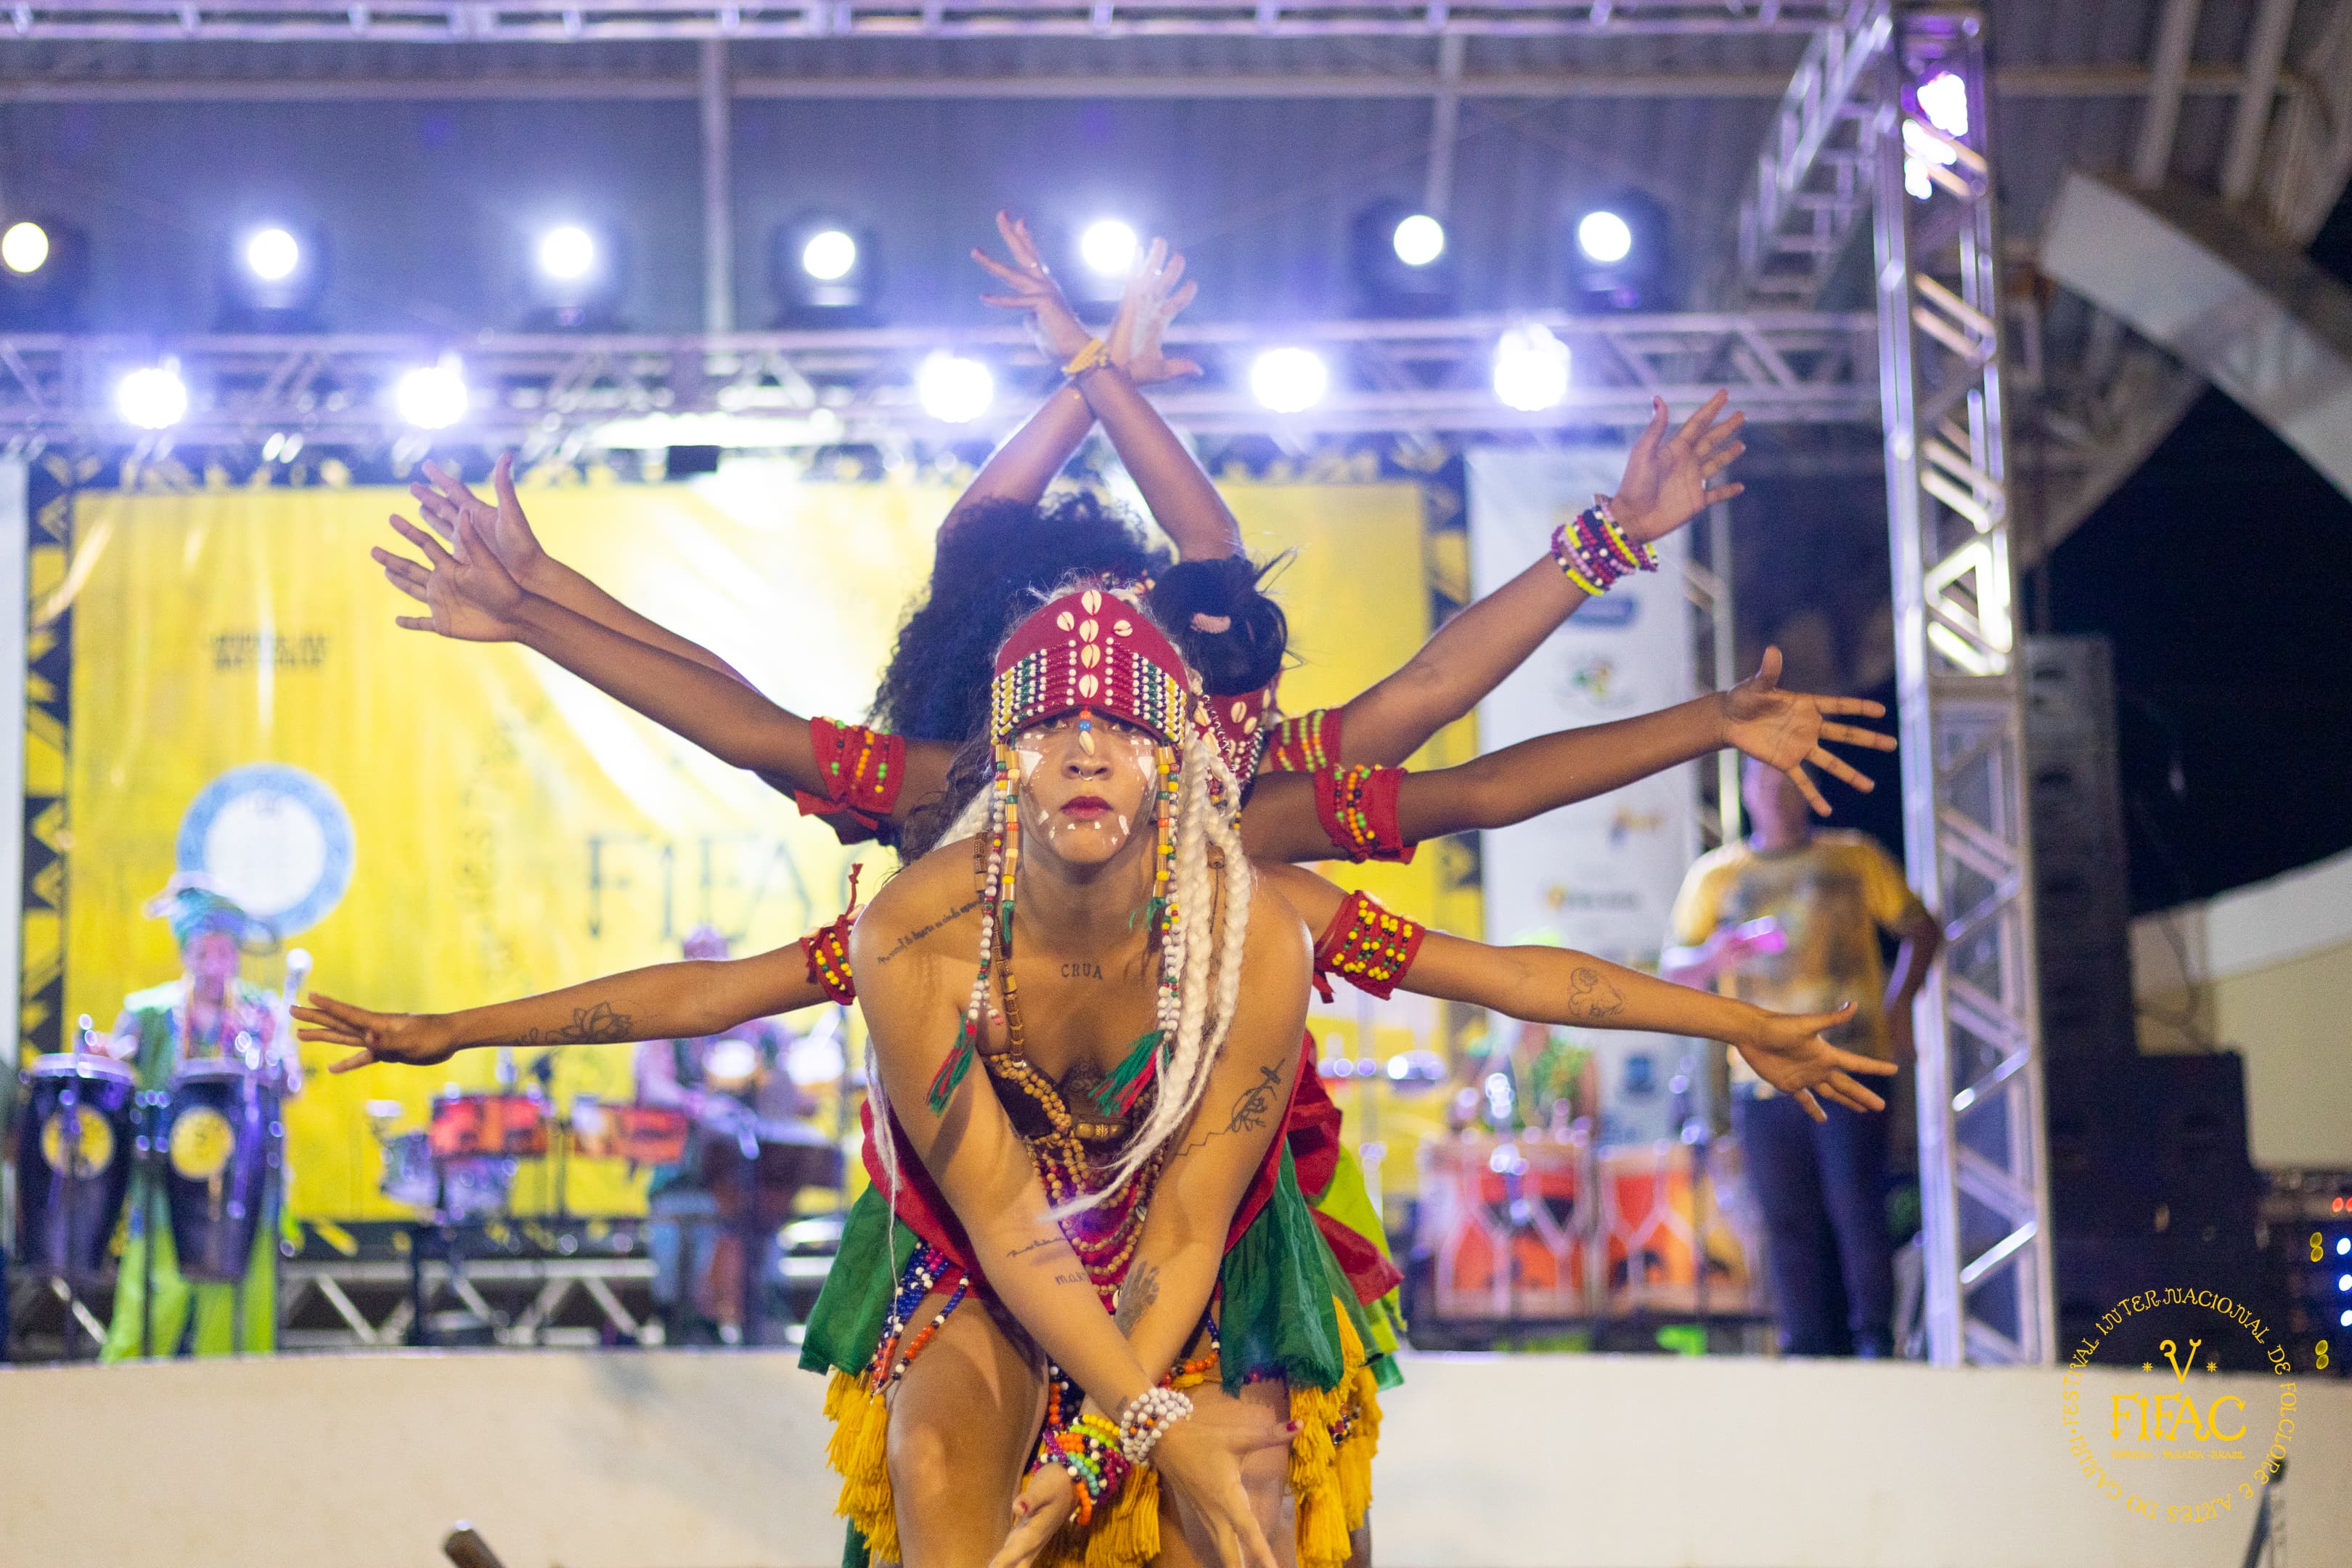 Foto de apresentação noturna do grupo Bacnaré, com jovem negro à frente de um grupo de bailarinos, que usam braços e mãos para simular um efeito de que a pessoa em primeiro plano parece ter vários braços. Ao fundo, se vê um palco iluminado.